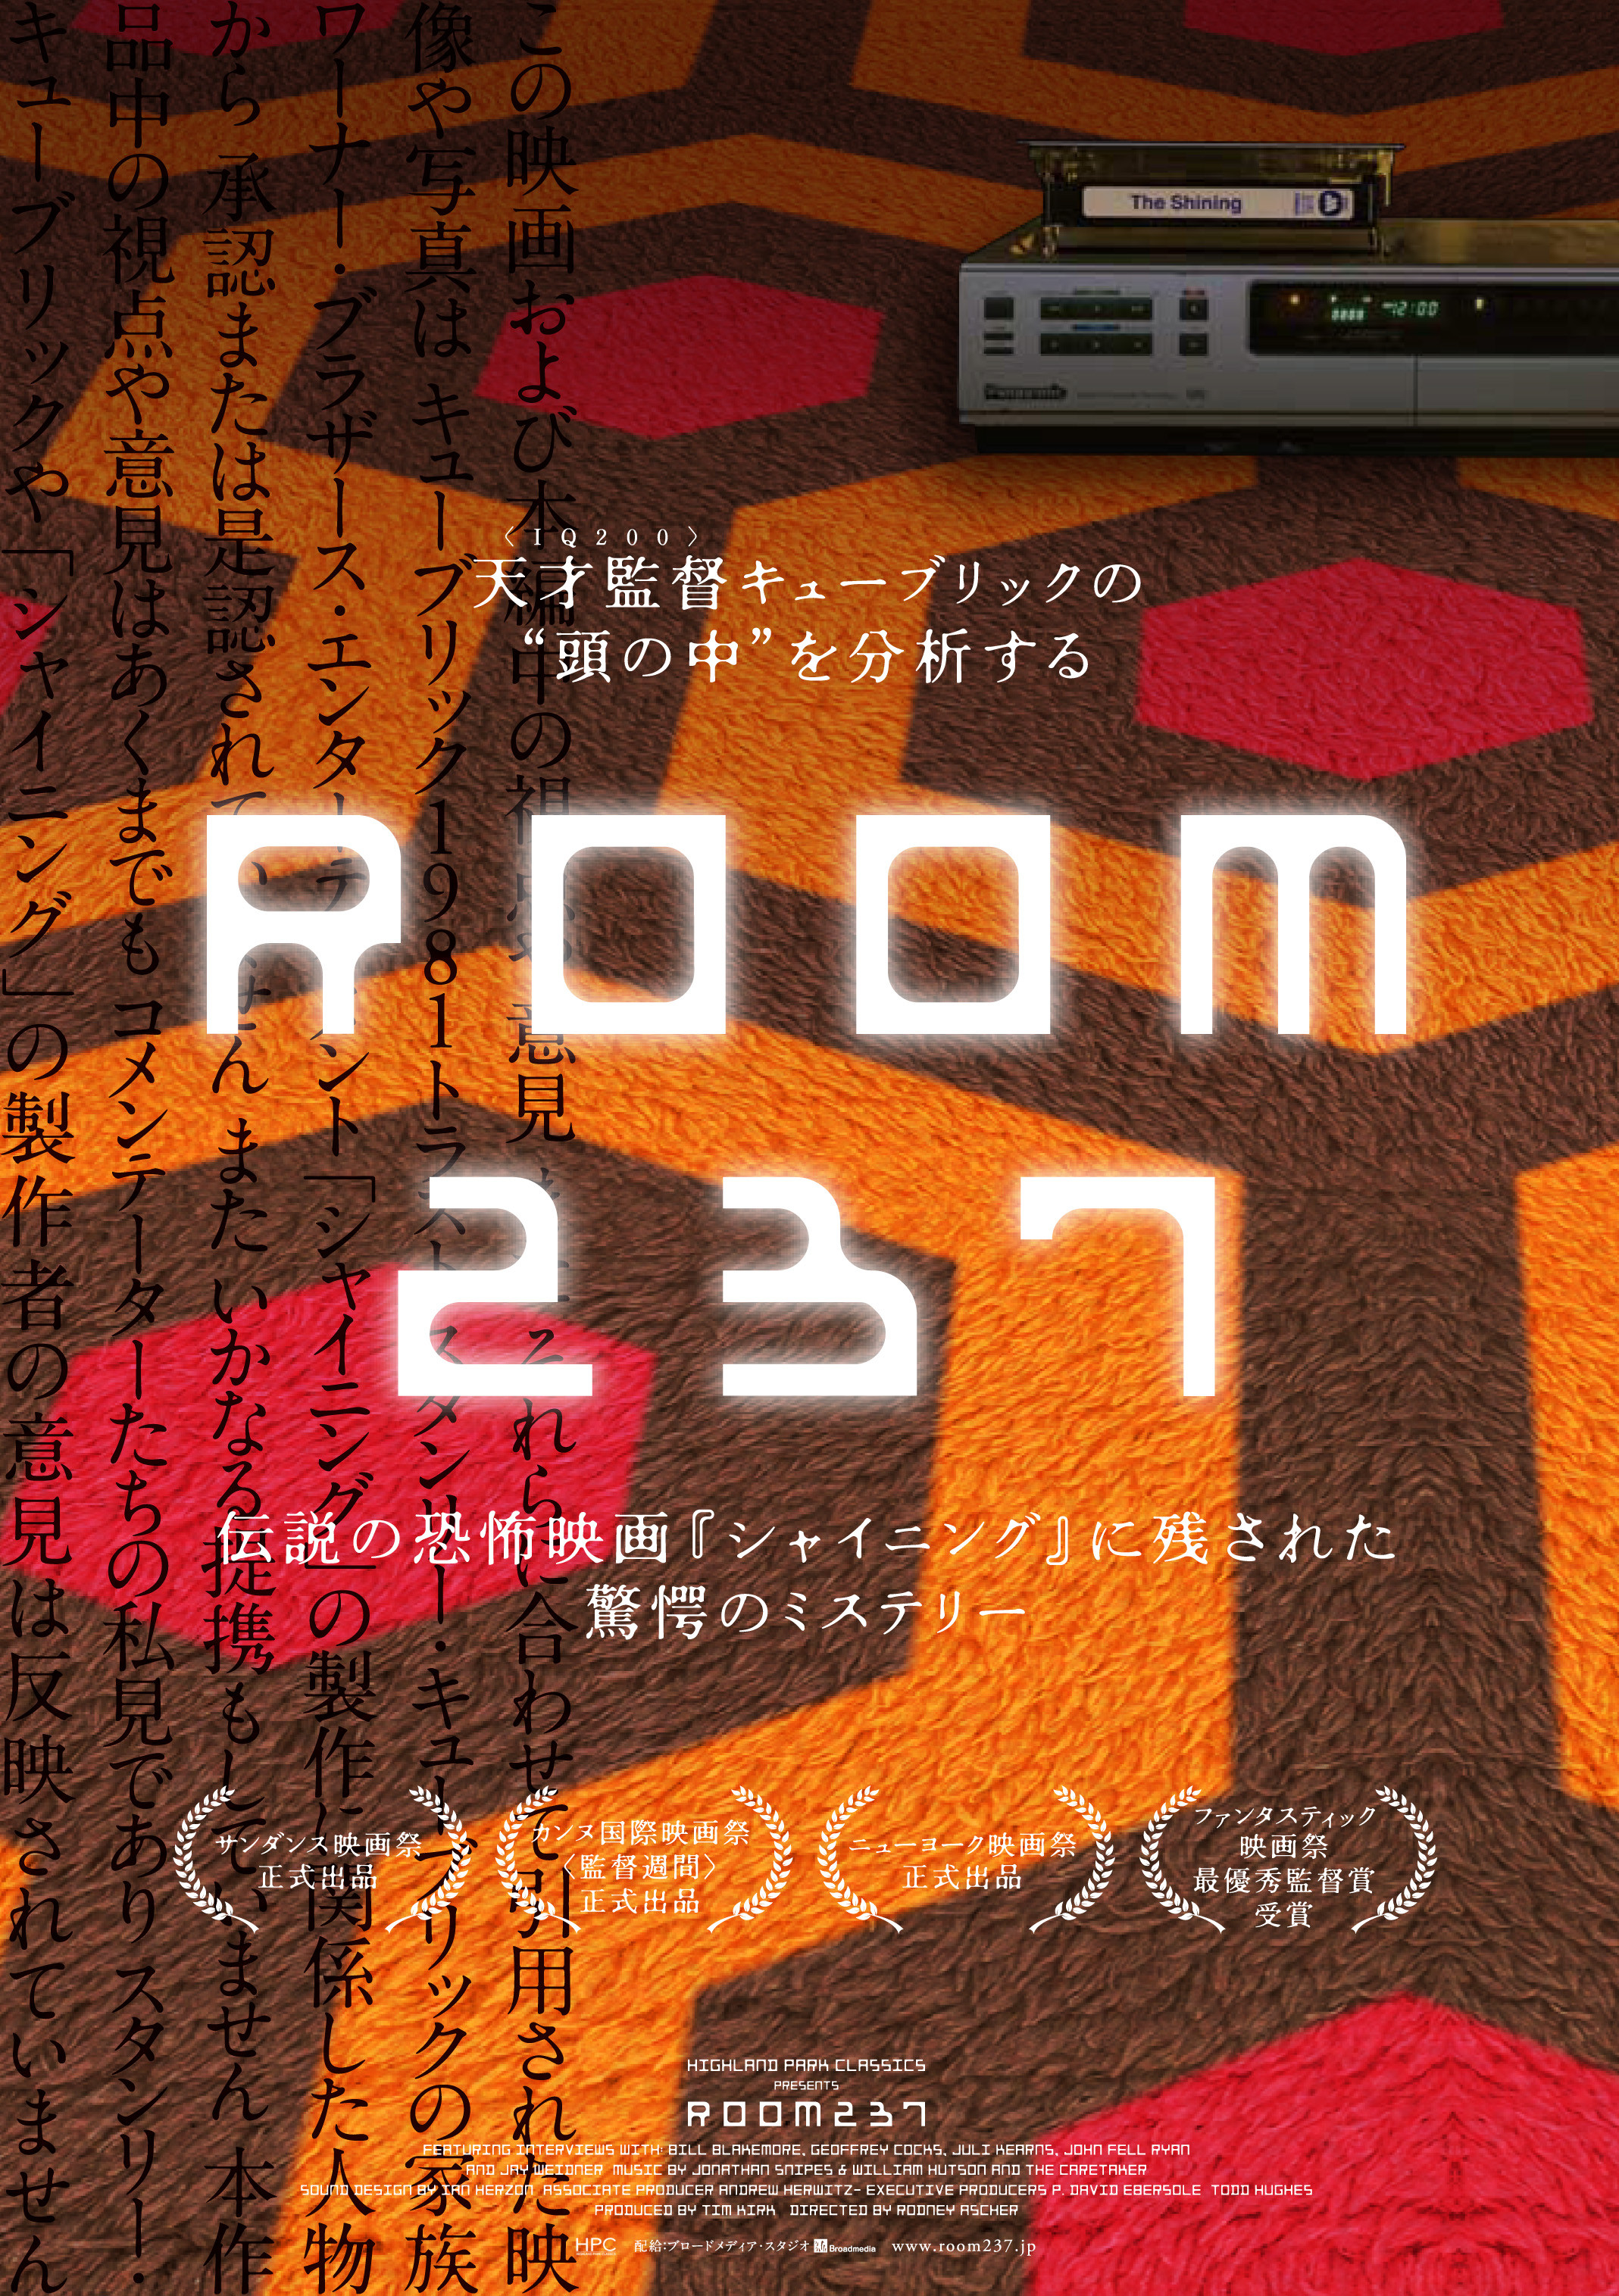 製作陣は未承認 シャイニング を徹底検証するドキュメンタリー Room237 予告公開 映画ニュース 映画 Com